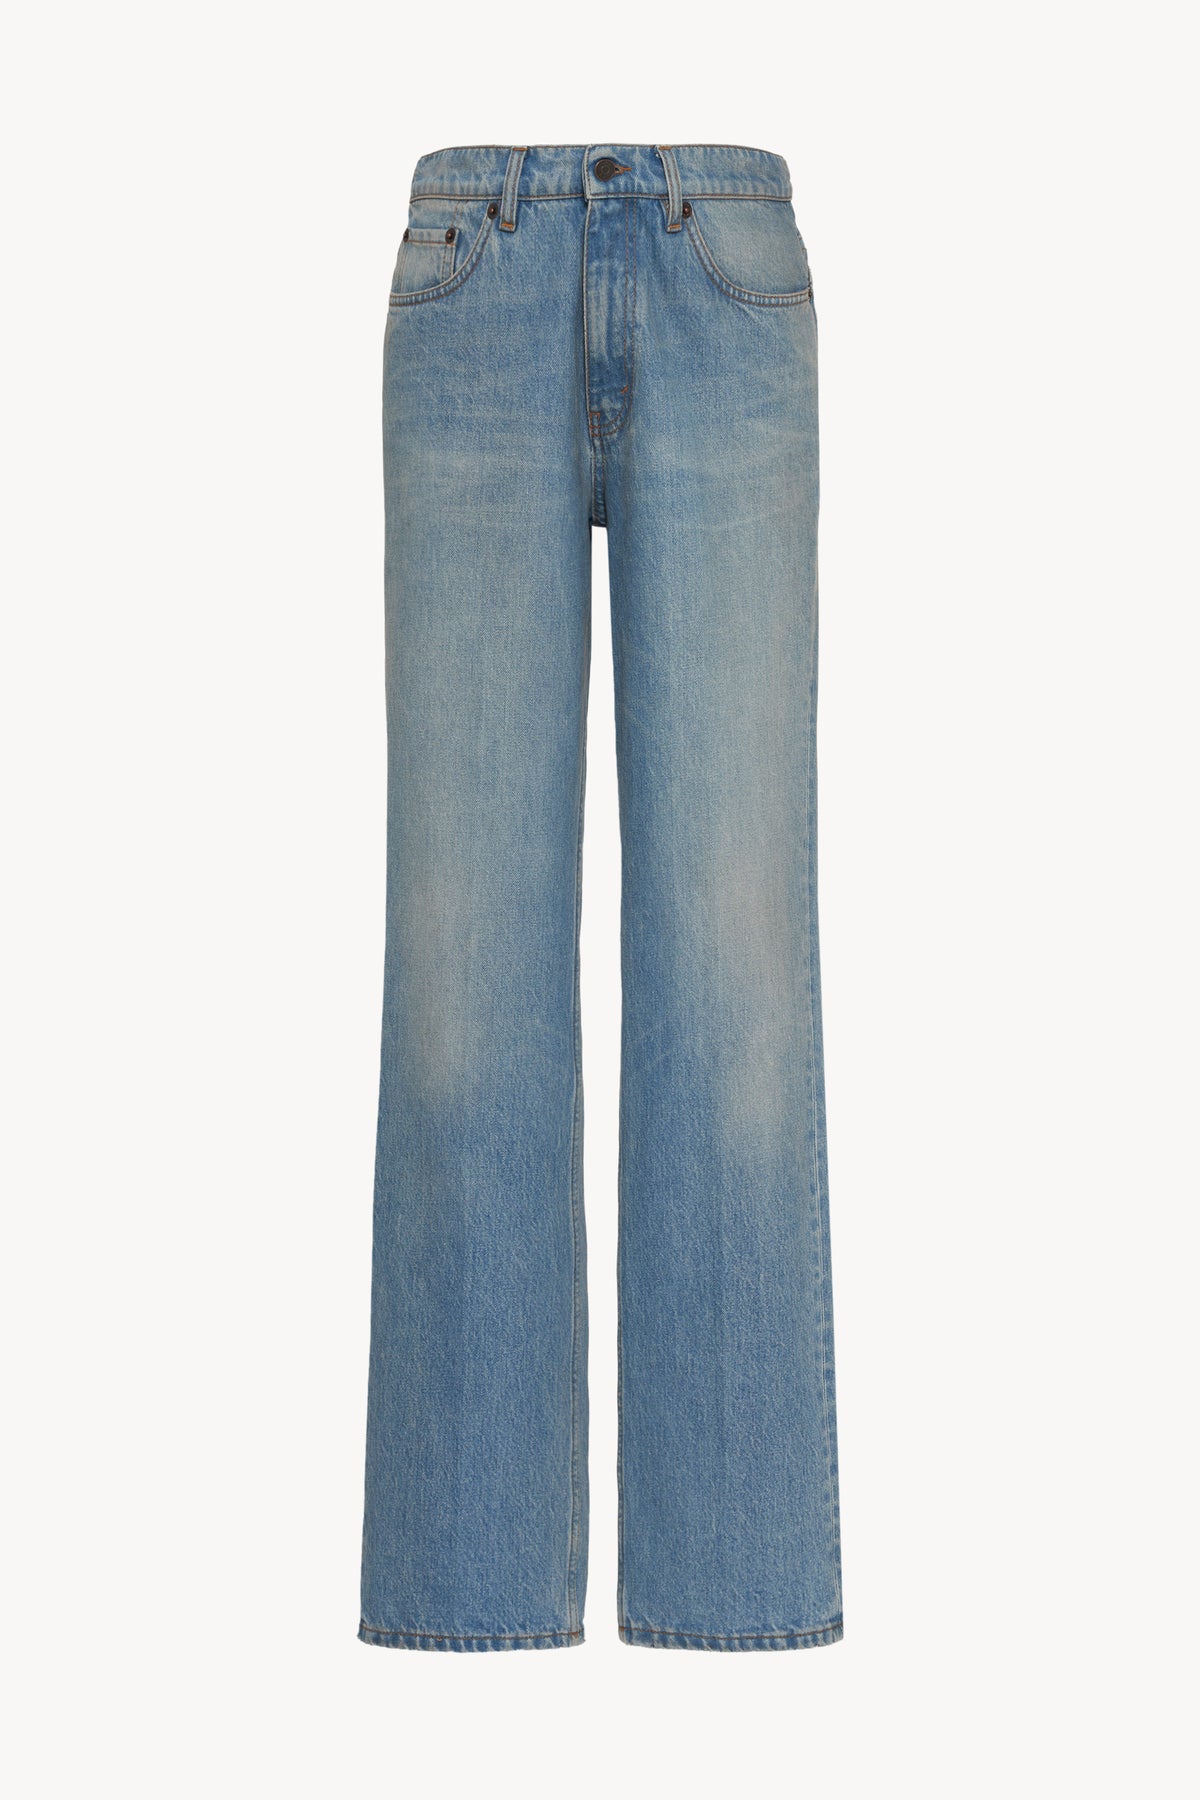 Carlton Jeans in cotone